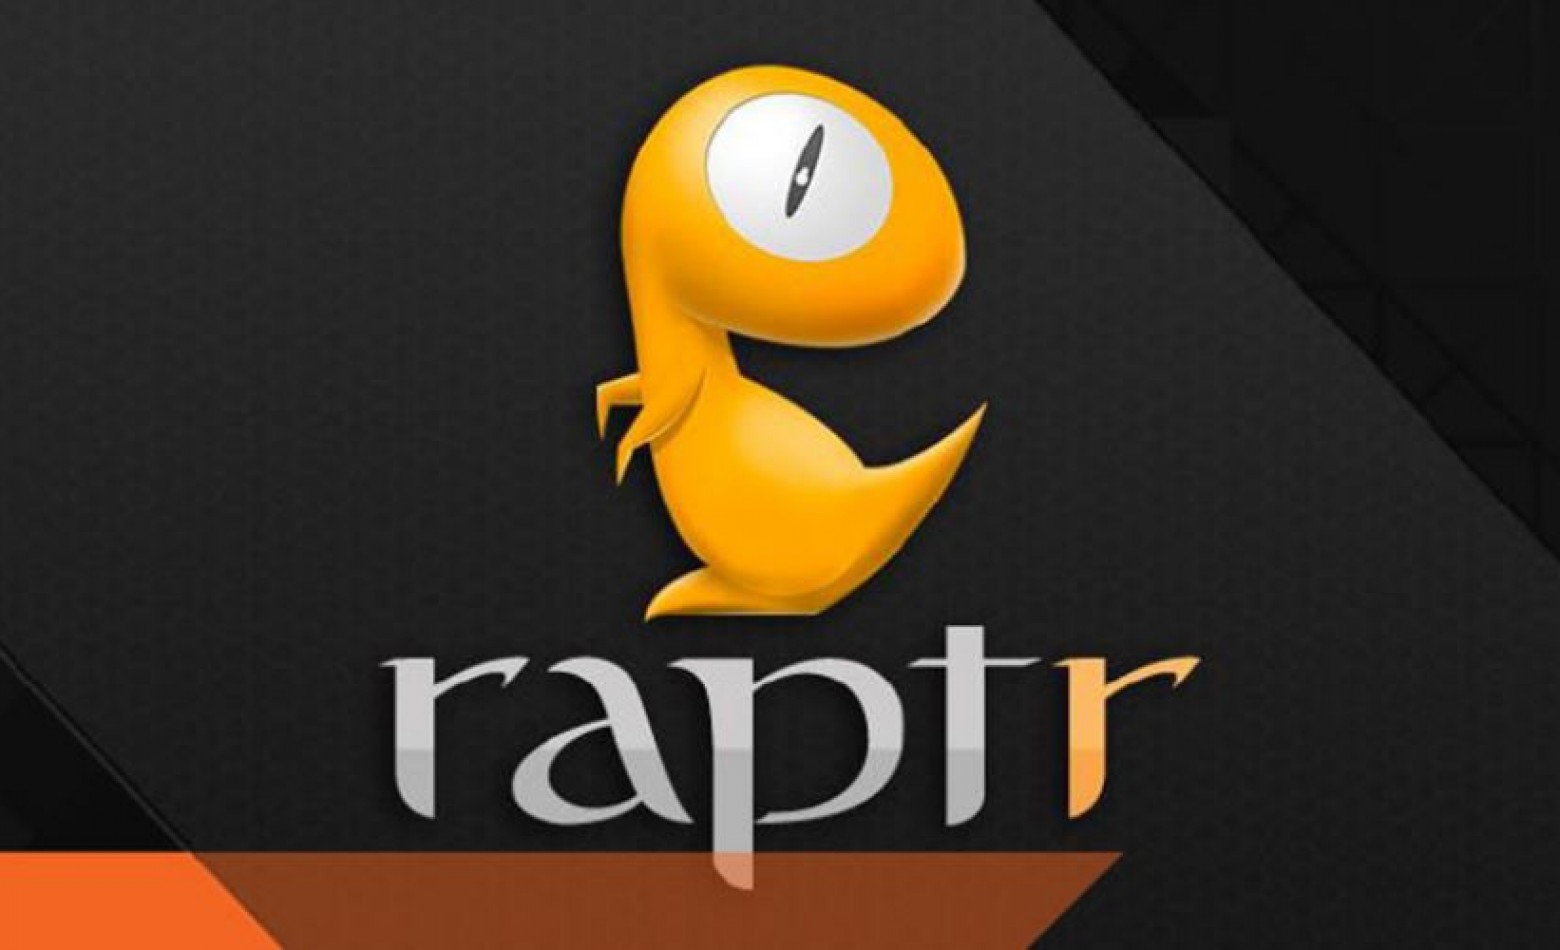 Após ataque, Raptr pede que usuários troquem suas senhas